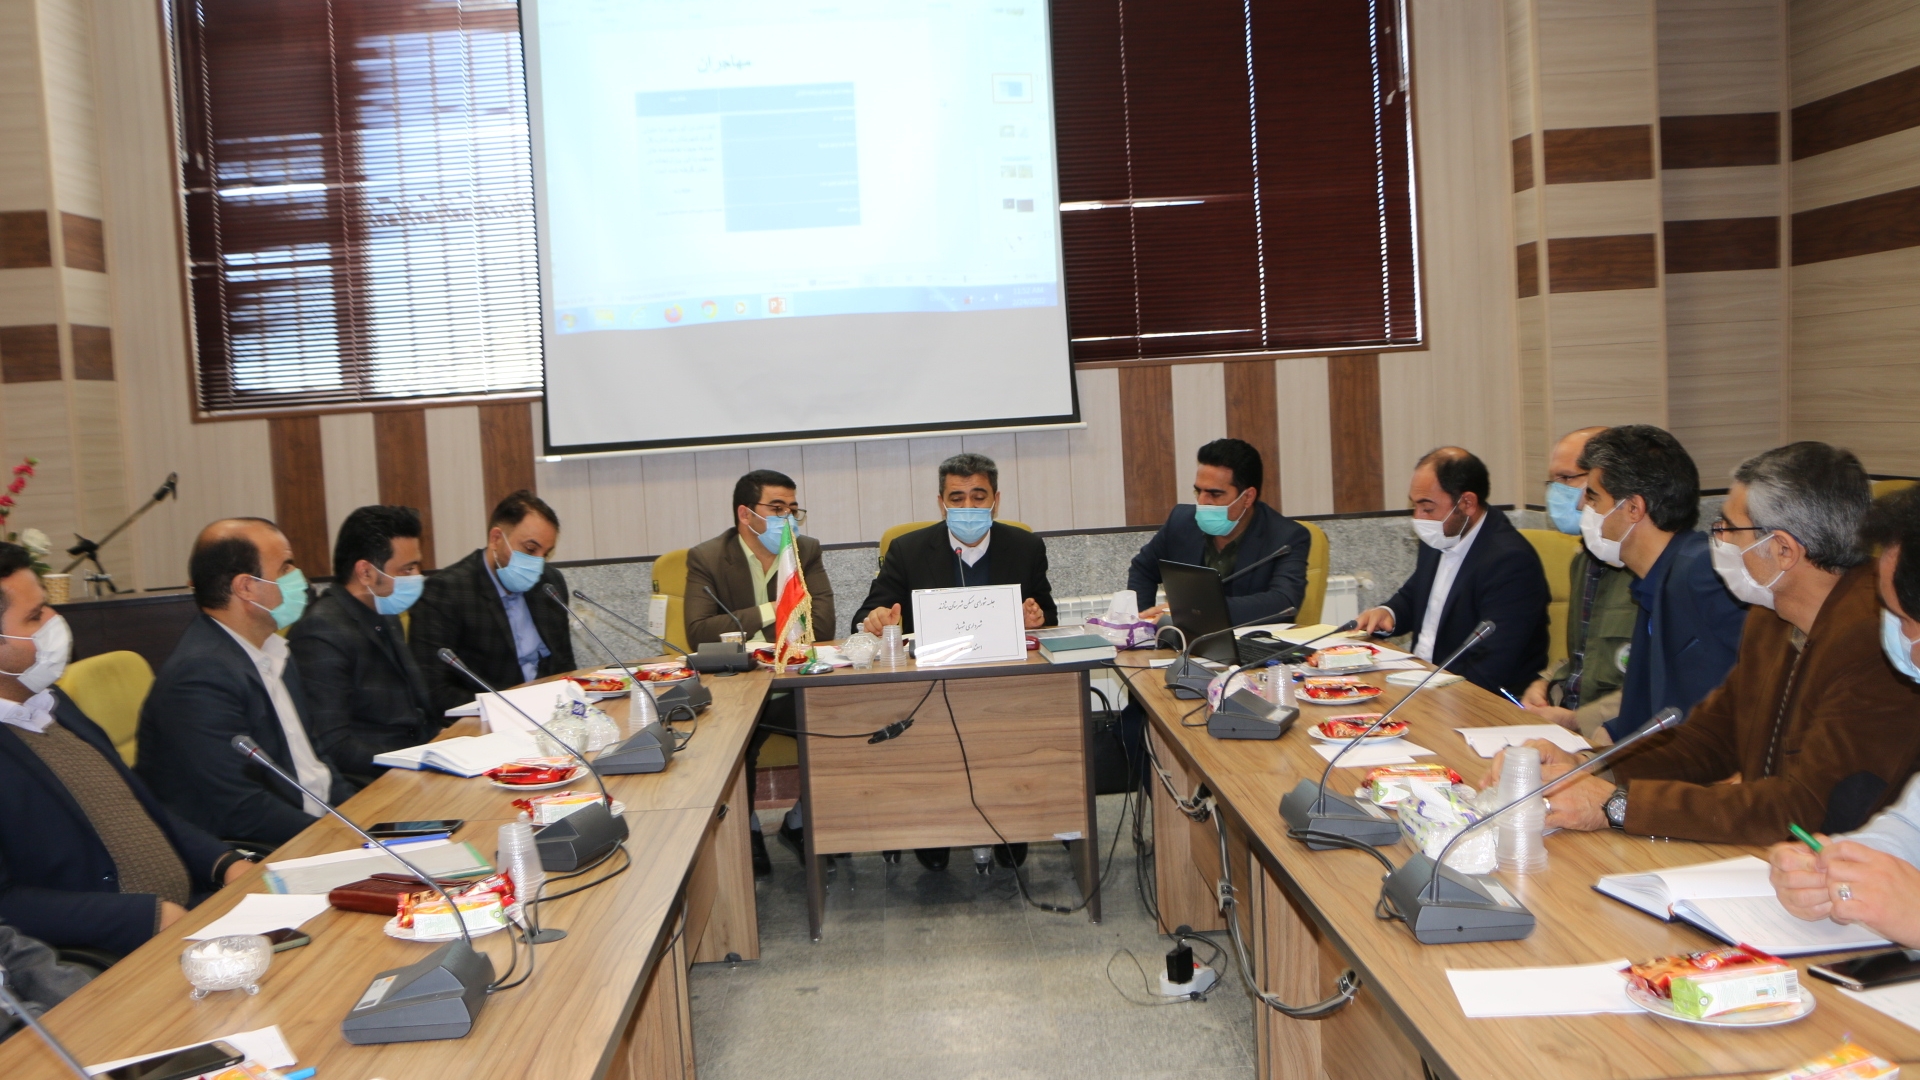 برگزاری دومین جلسه شورای مسکن شهرستان شازند به ریاست دکتر رمضانی فرماندار در محل شهرداری شهباز